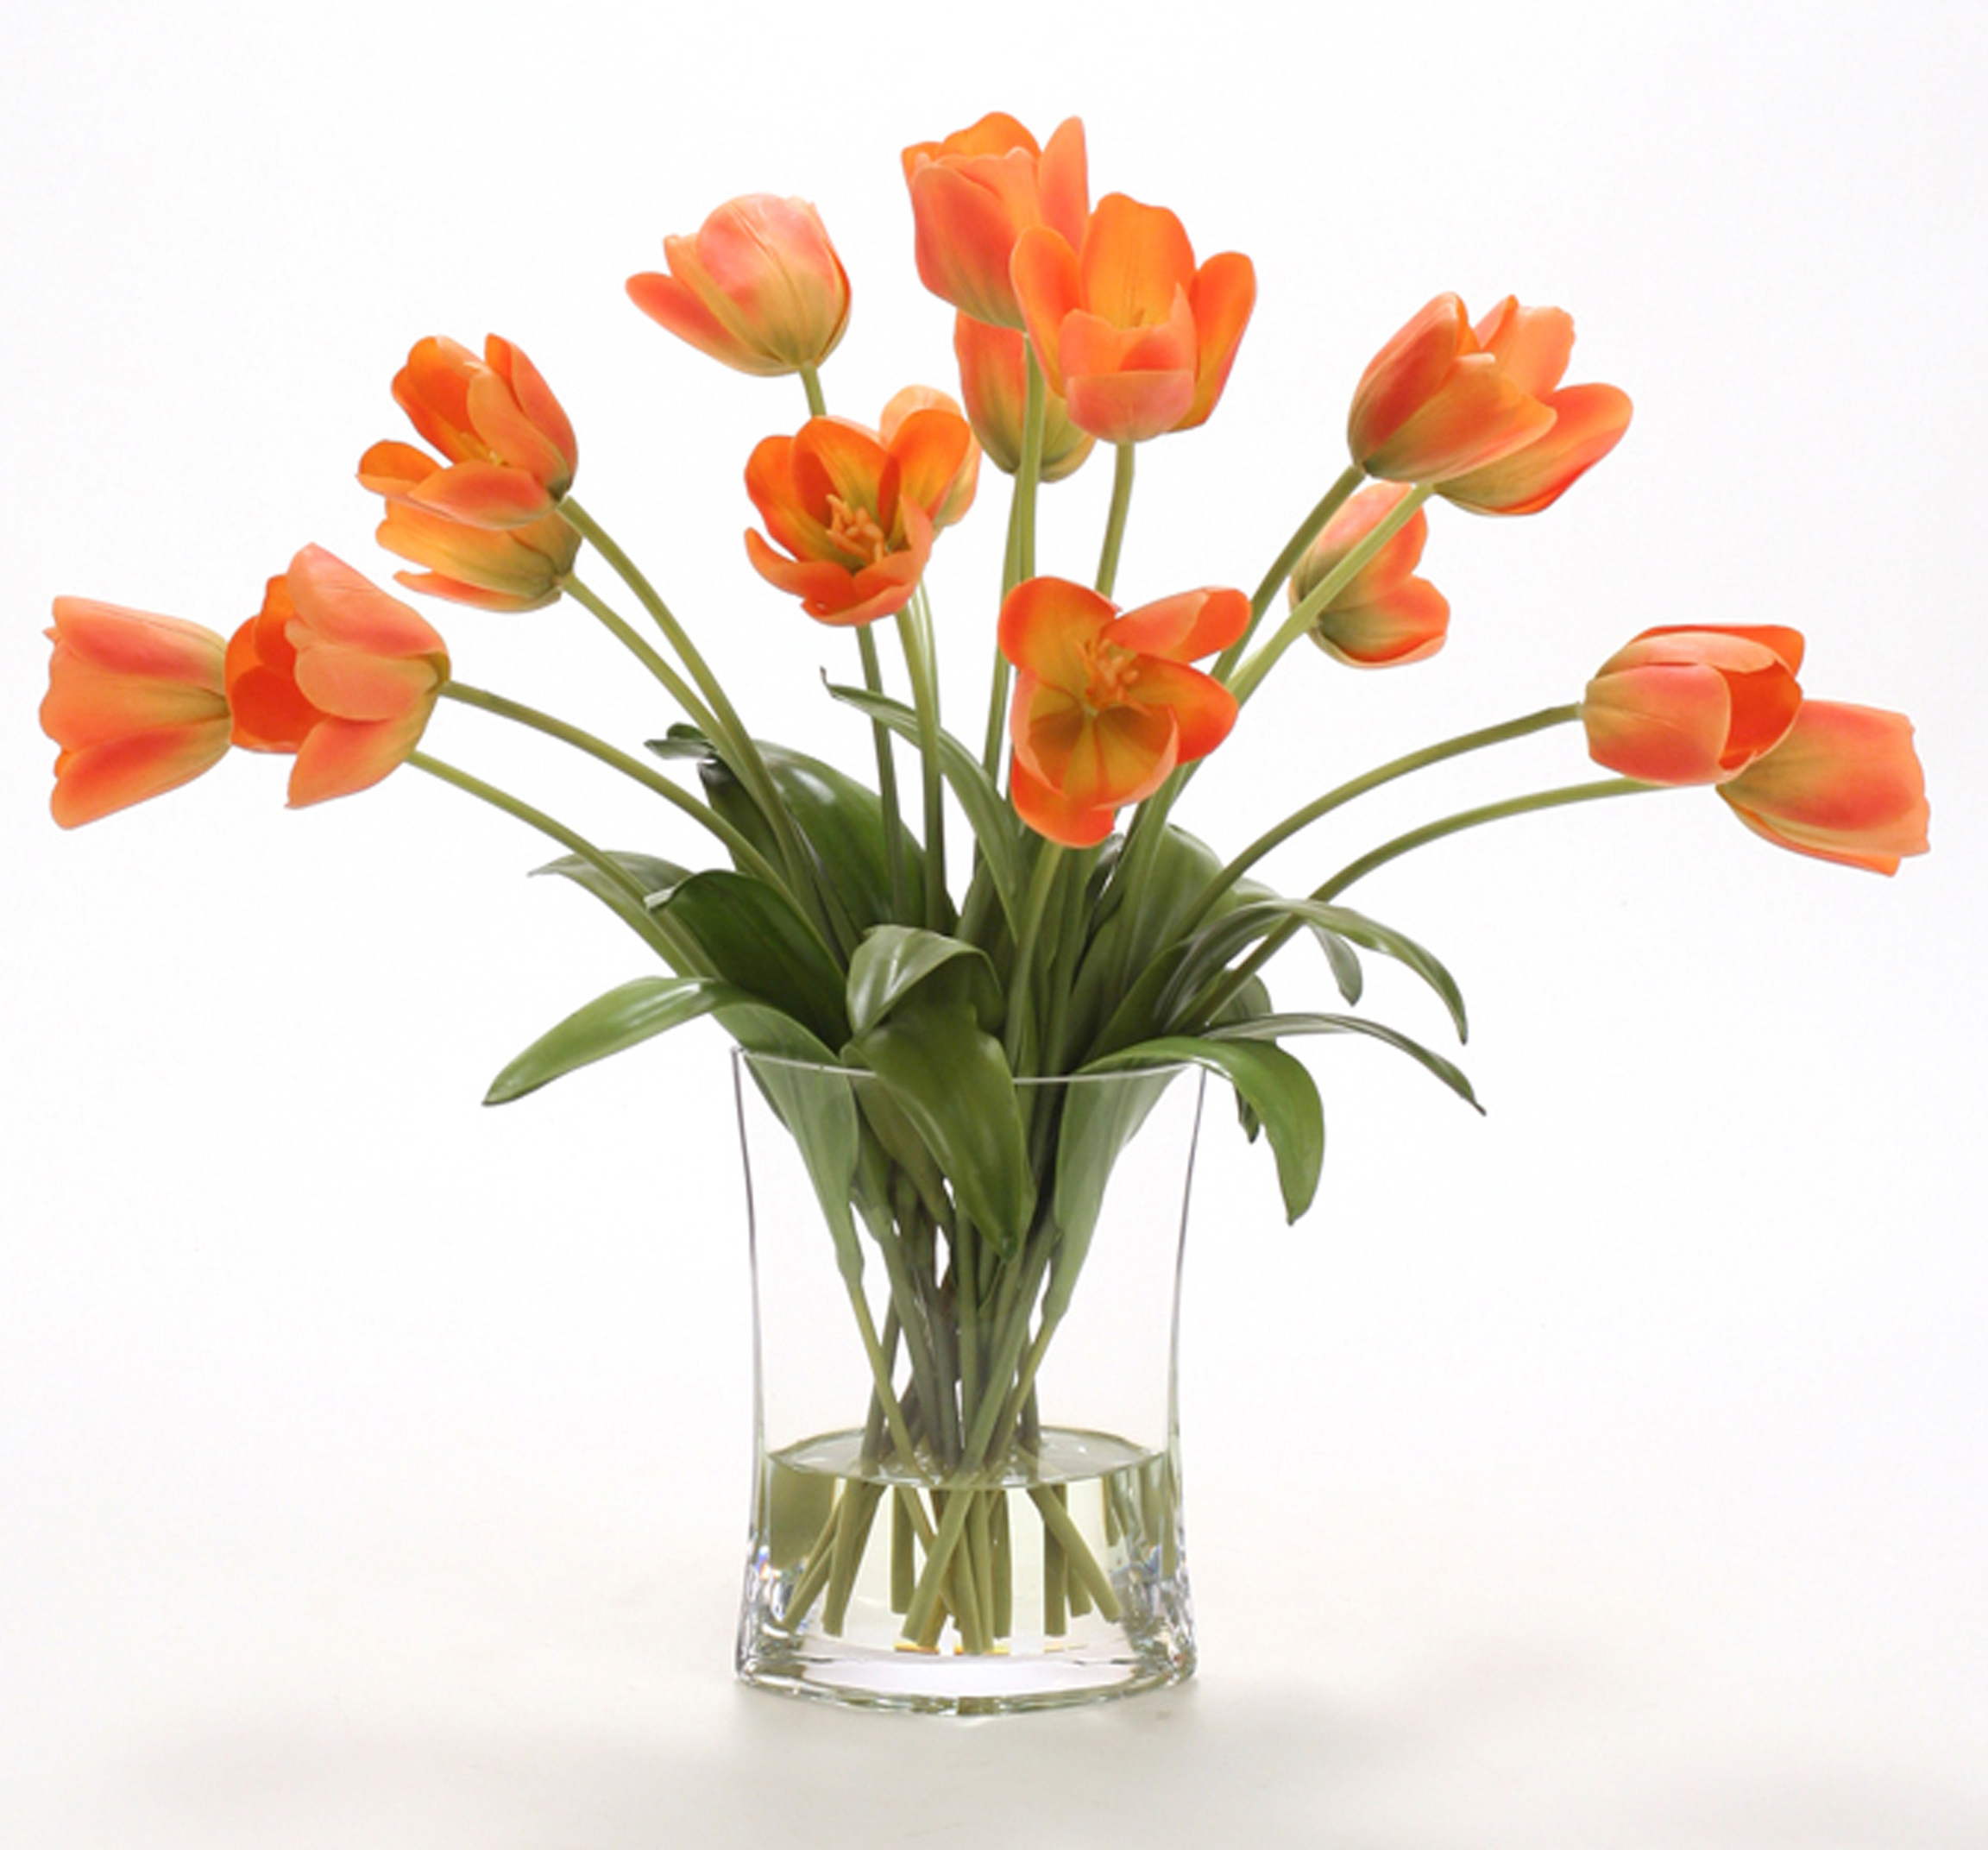 Waterlook ® Silk Bittersweet Tulips in a Clear Glass Pillow Vase